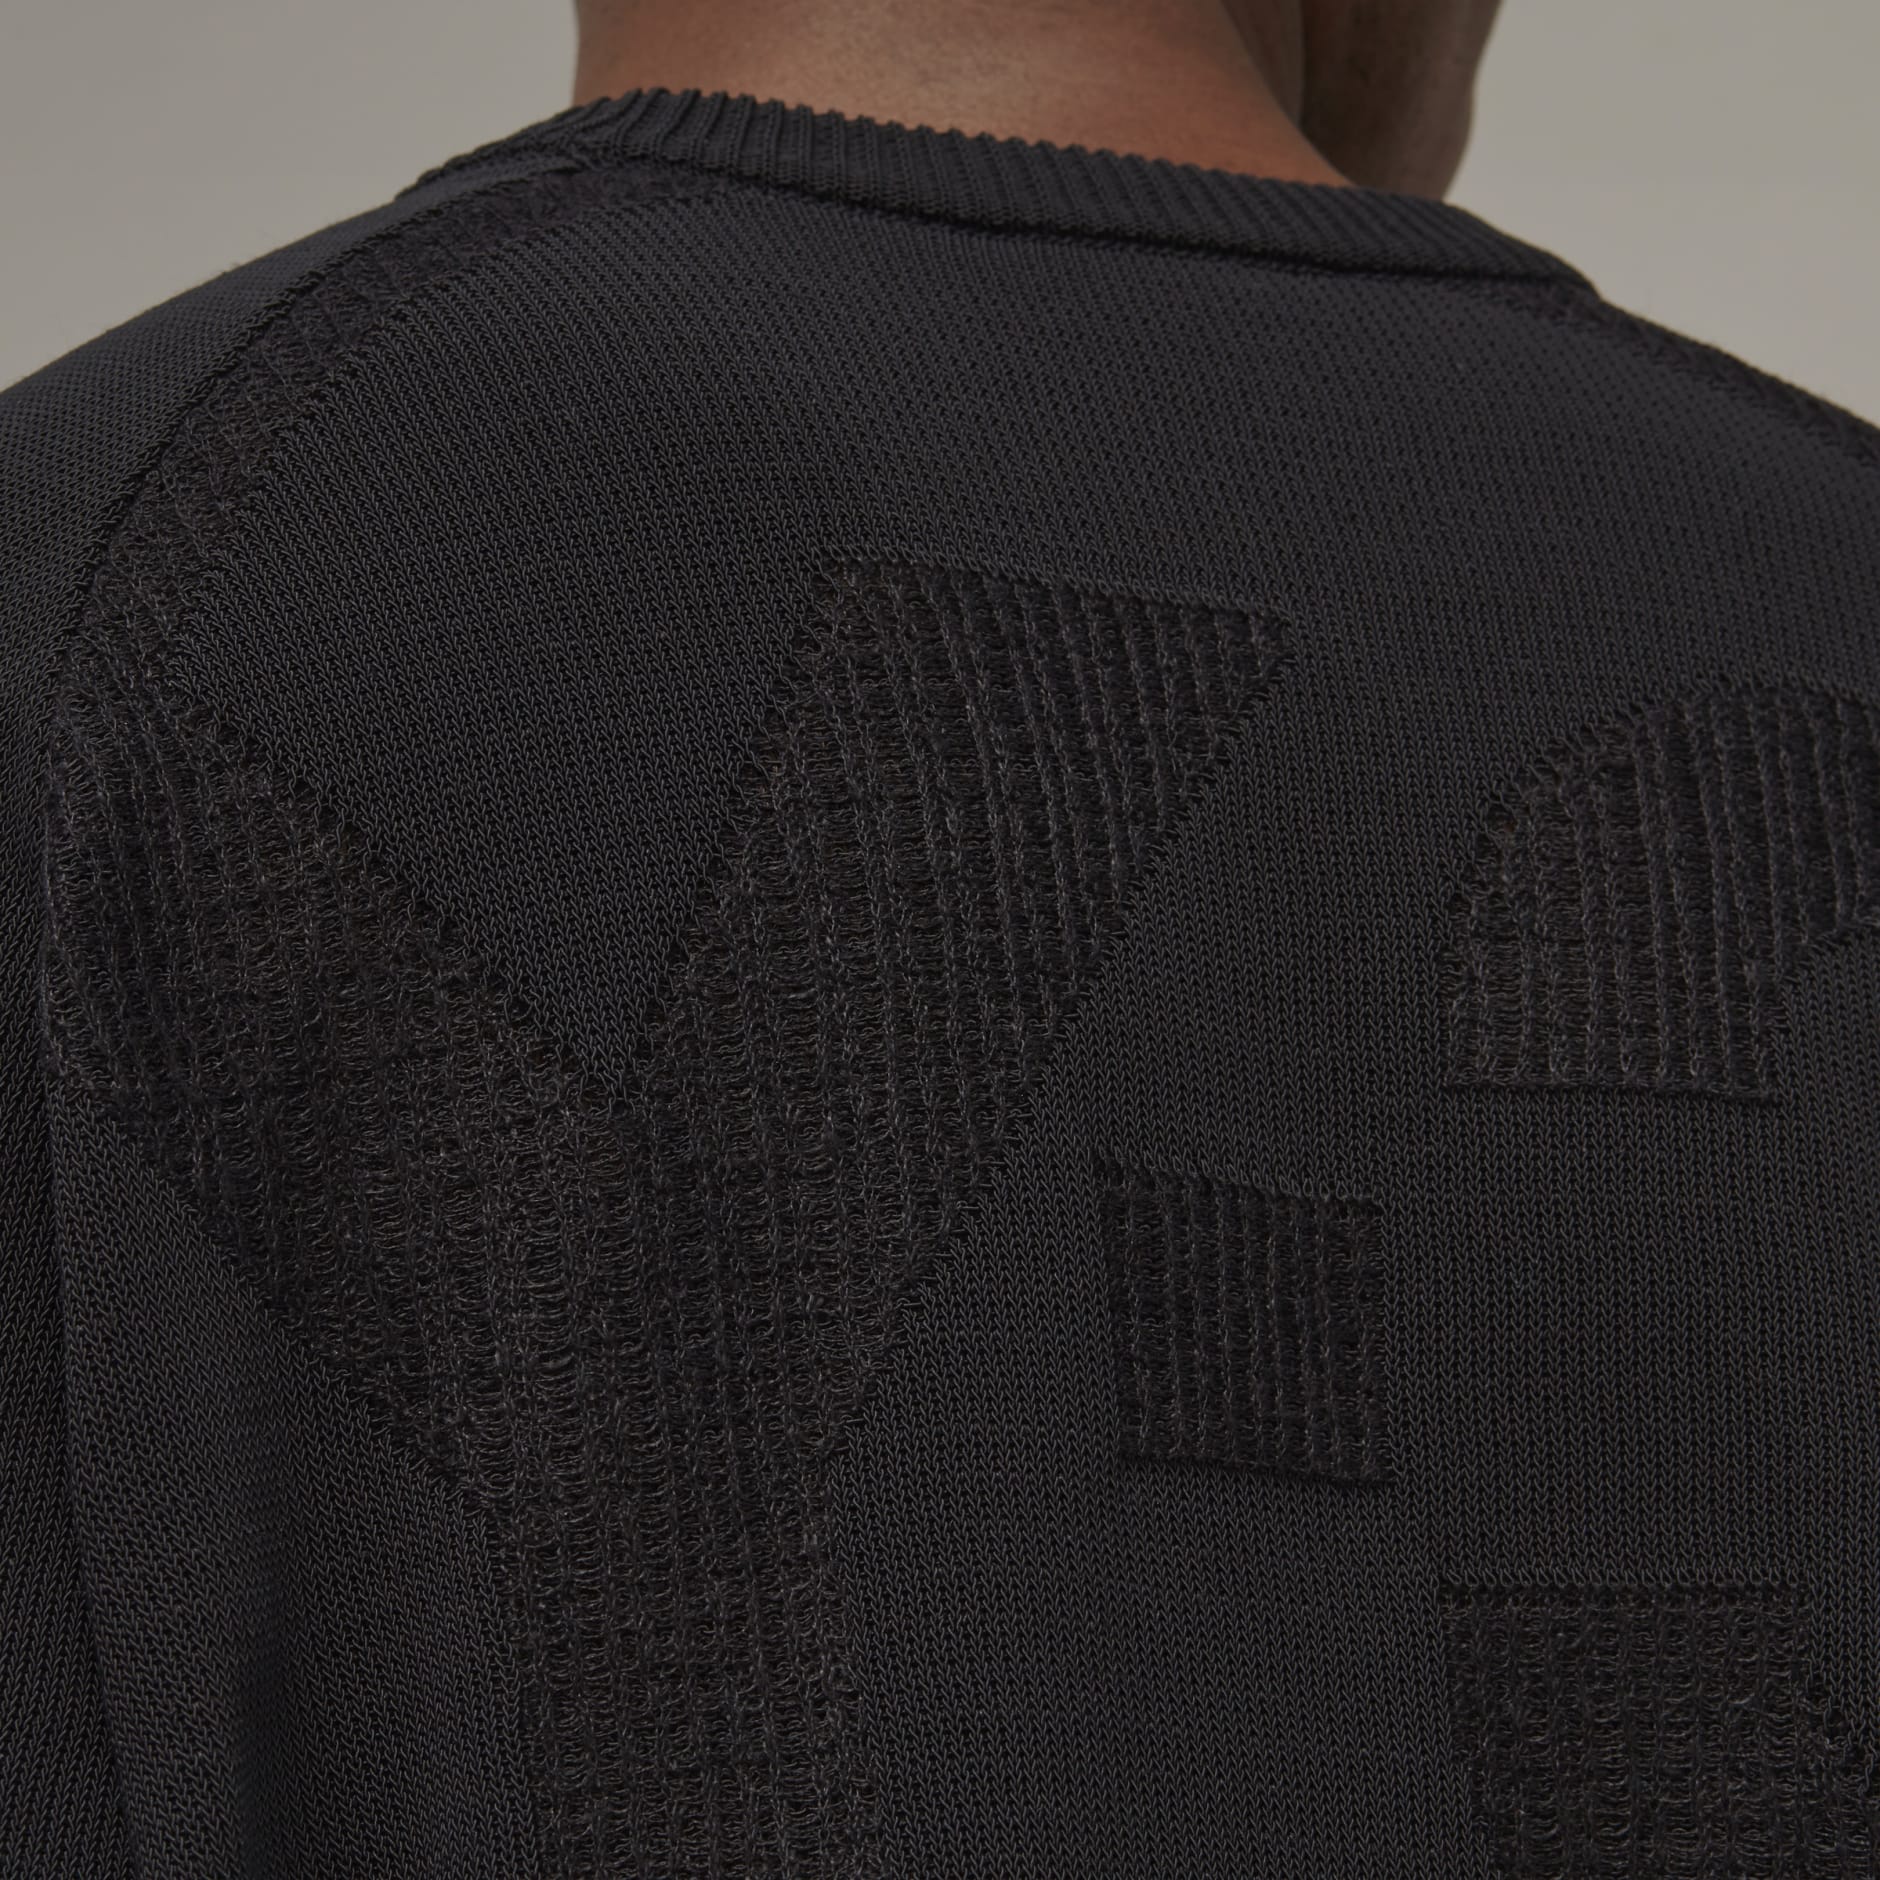 Louis Vuitton Football T-Shirt Knit Sweater